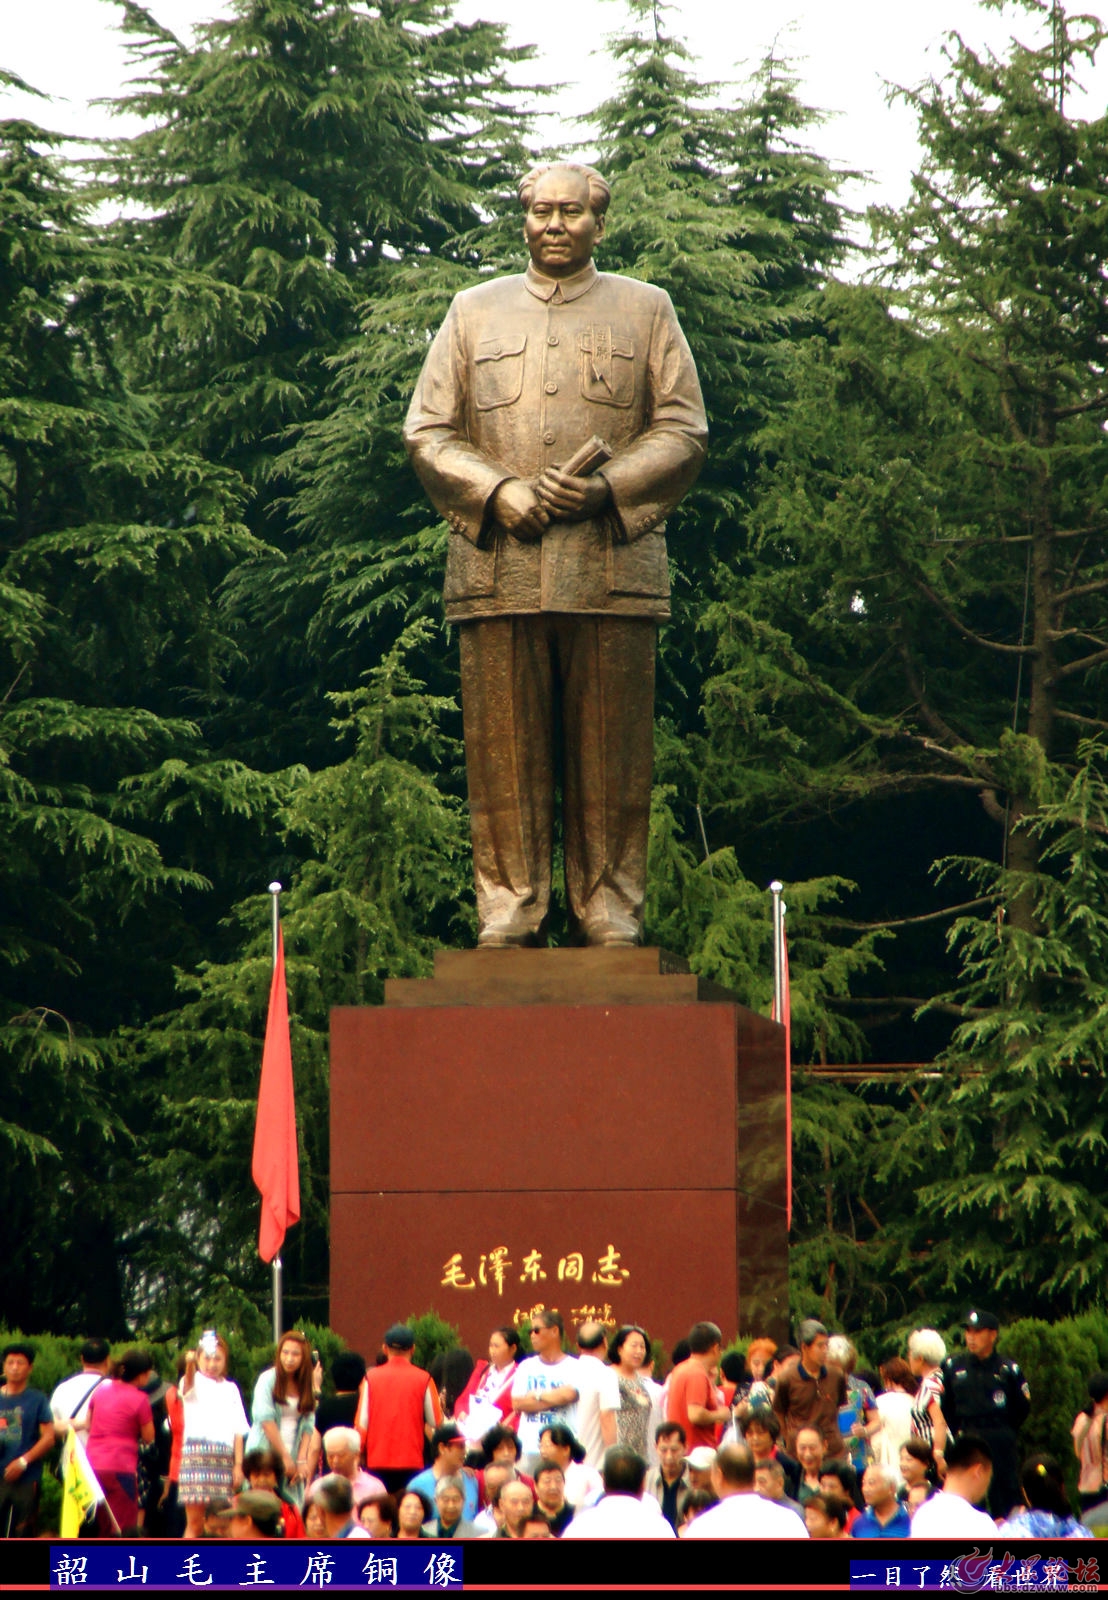 大型毛主席半身塑像雕塑_雕塑知识_滨州宏景雕塑有限公司